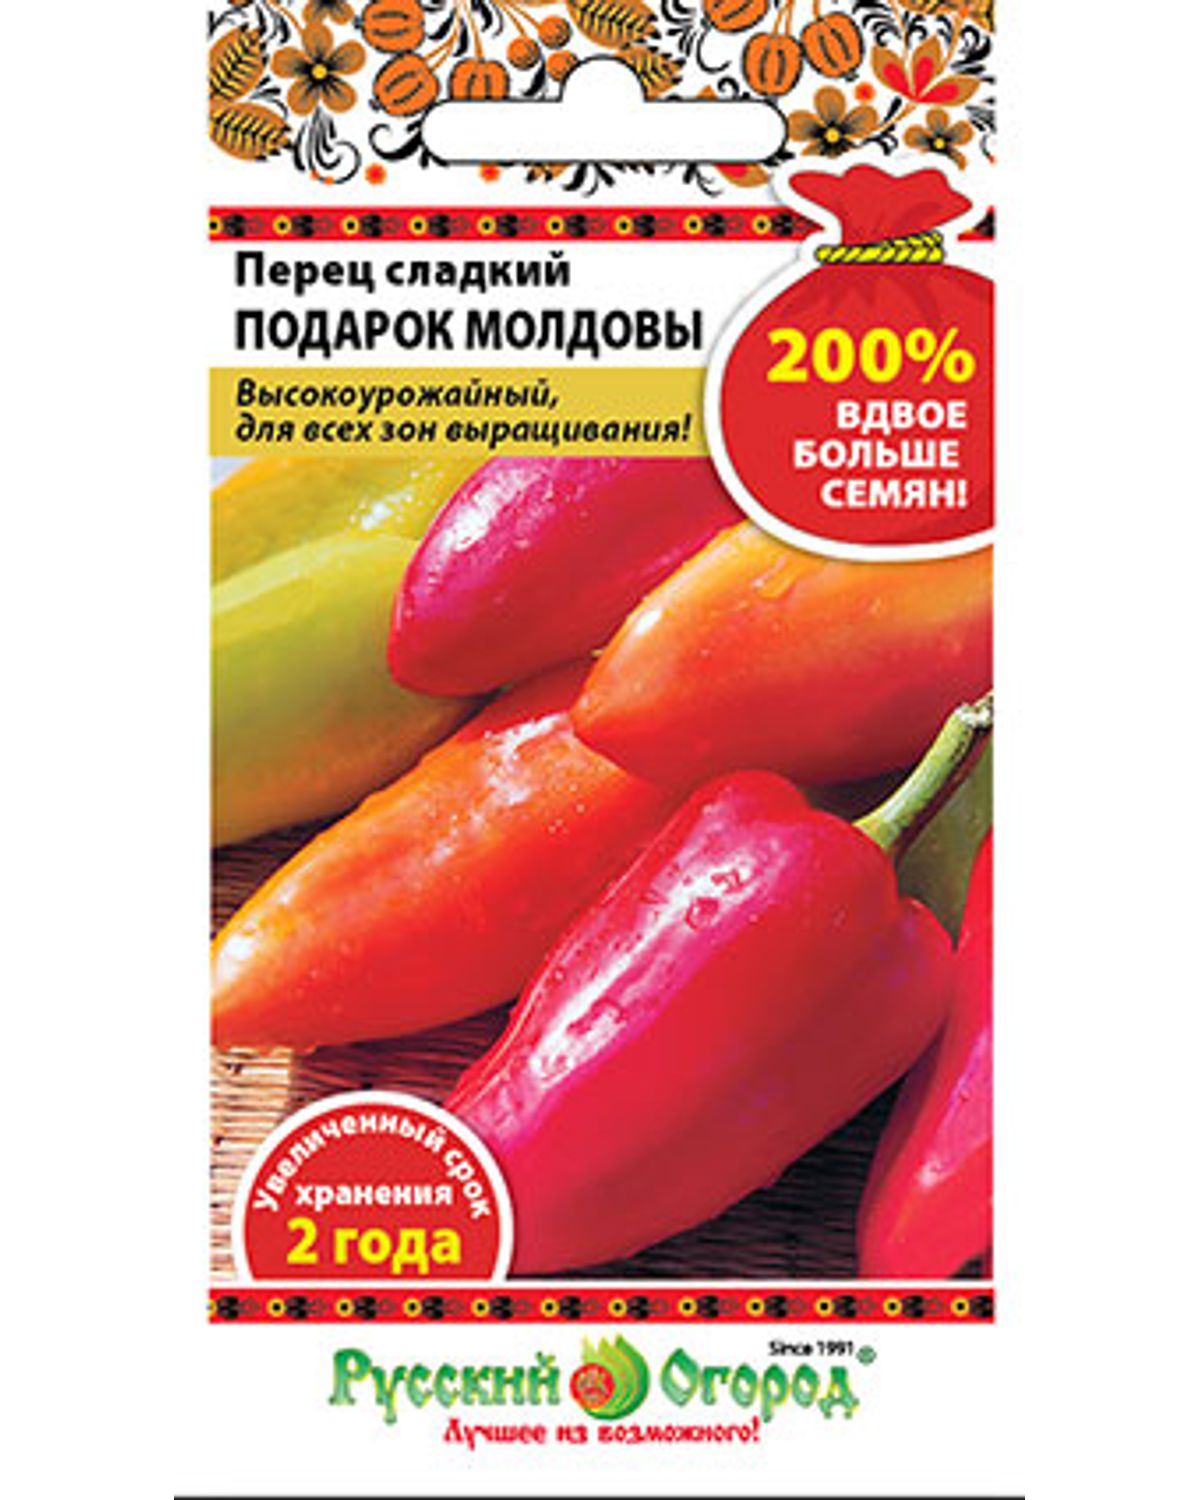 Семена перец сладкий Русский огород Подарок Молдовы 415016 1 уп. - отзывыпокупателей на Мегамаркет